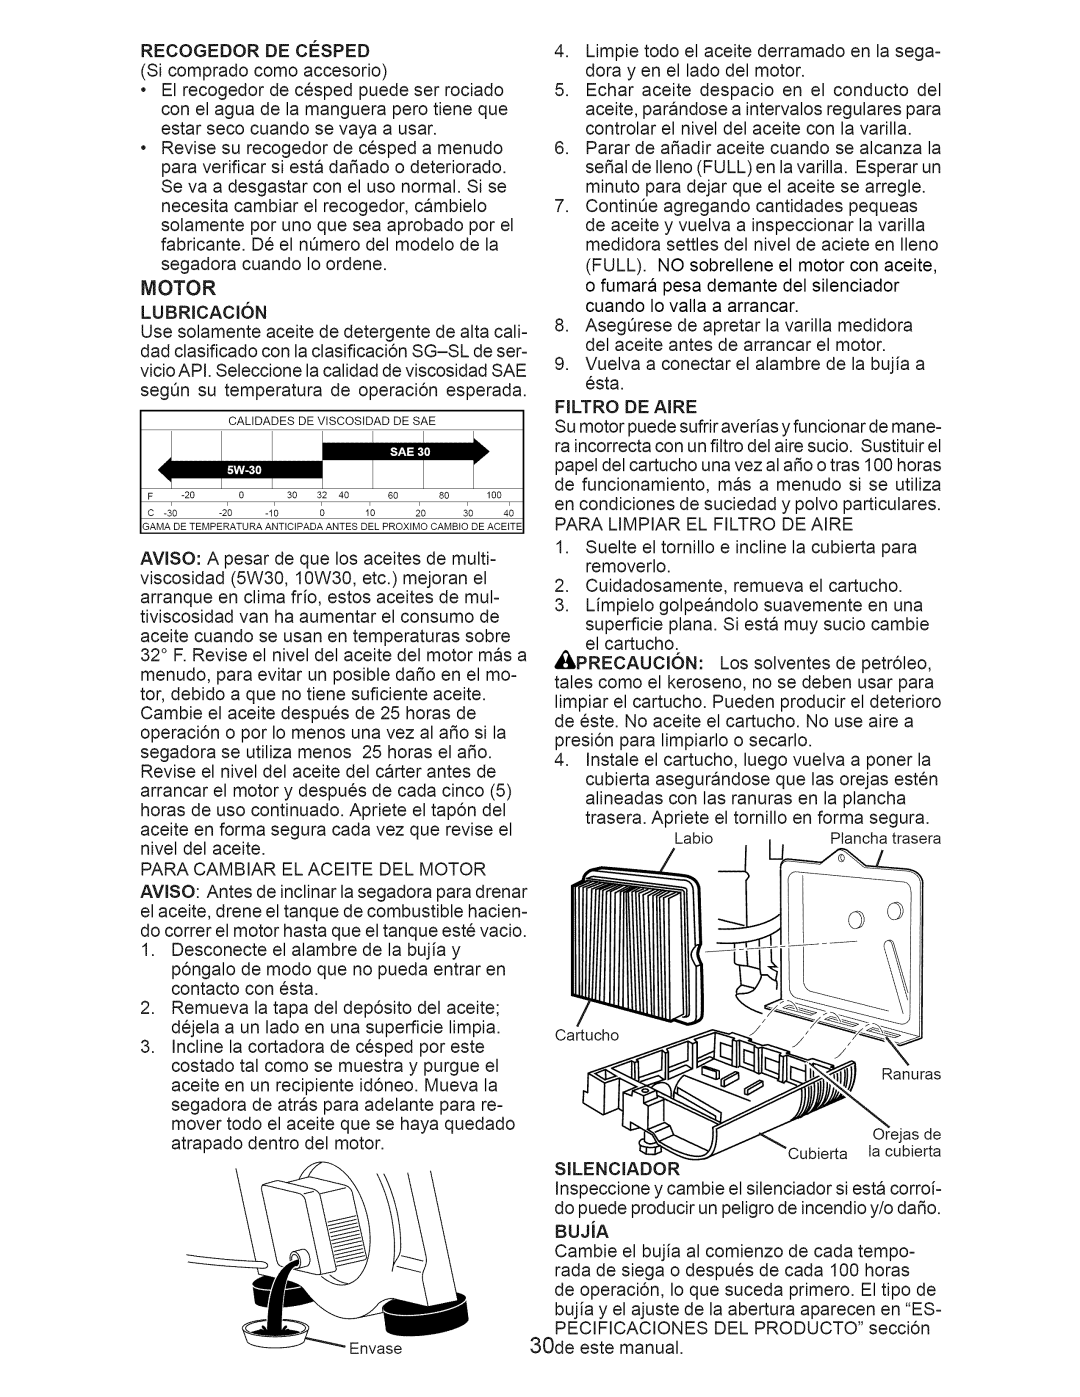 Craftsman 917.375012 owner manual •Elrecogedordecespedpuedeserrociado, RECOGEDORDECESPED Sicompradocomoaccesorio 